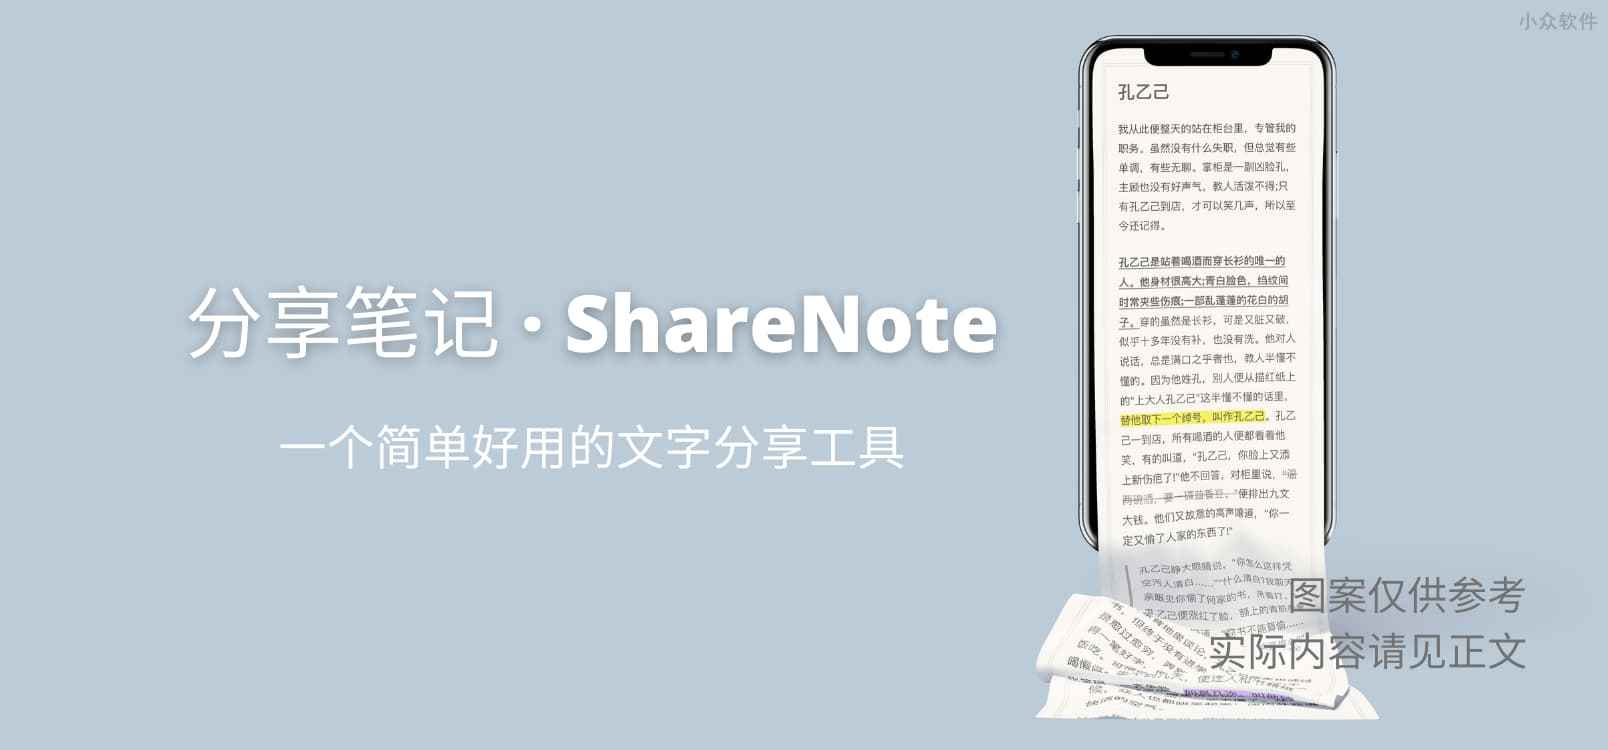 分享笔记 · ShareNote – 一个简单好用的文字分享工具